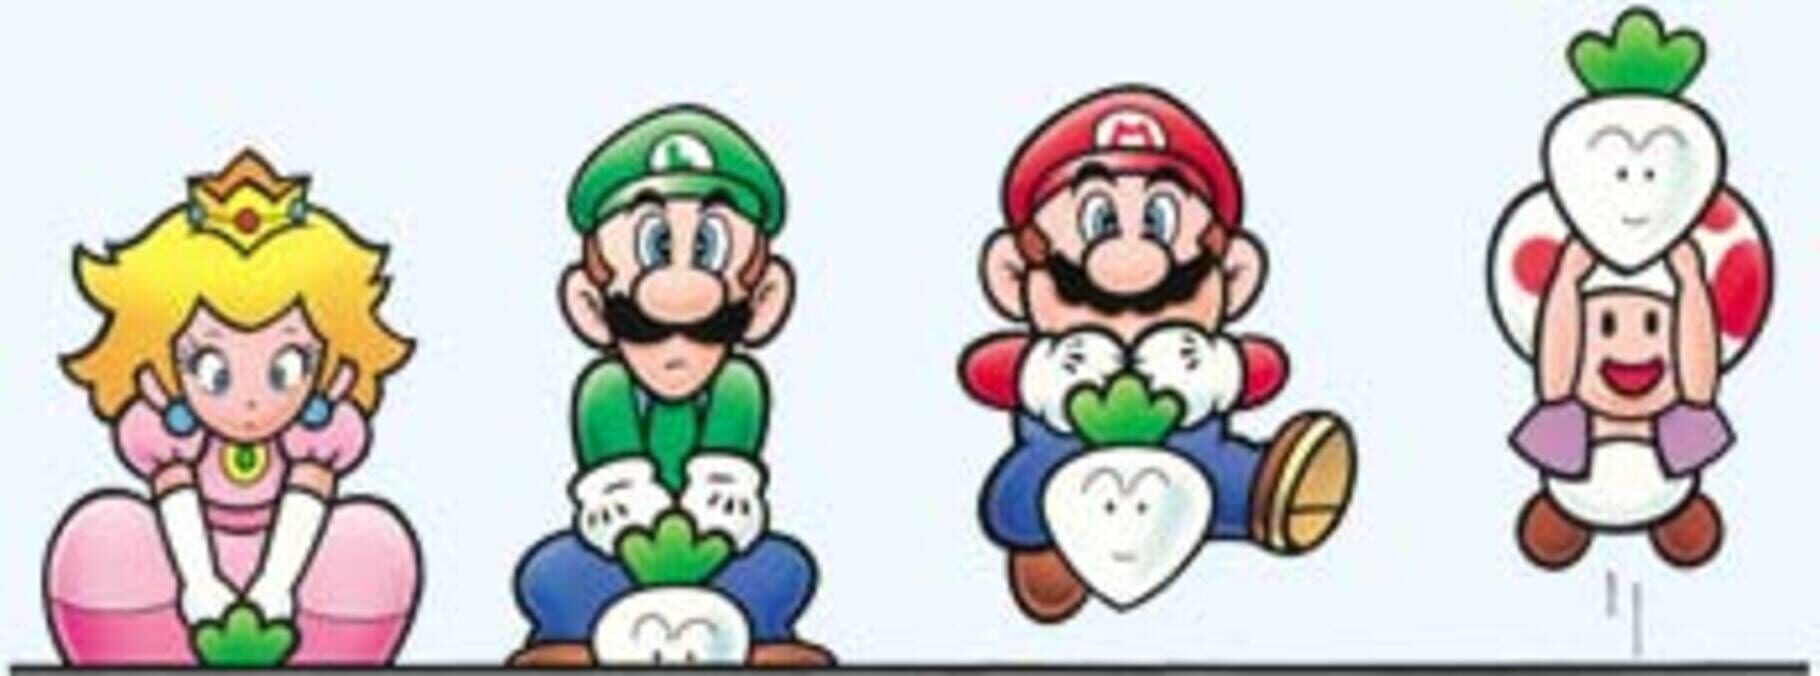 Arte - Super Mario Advance